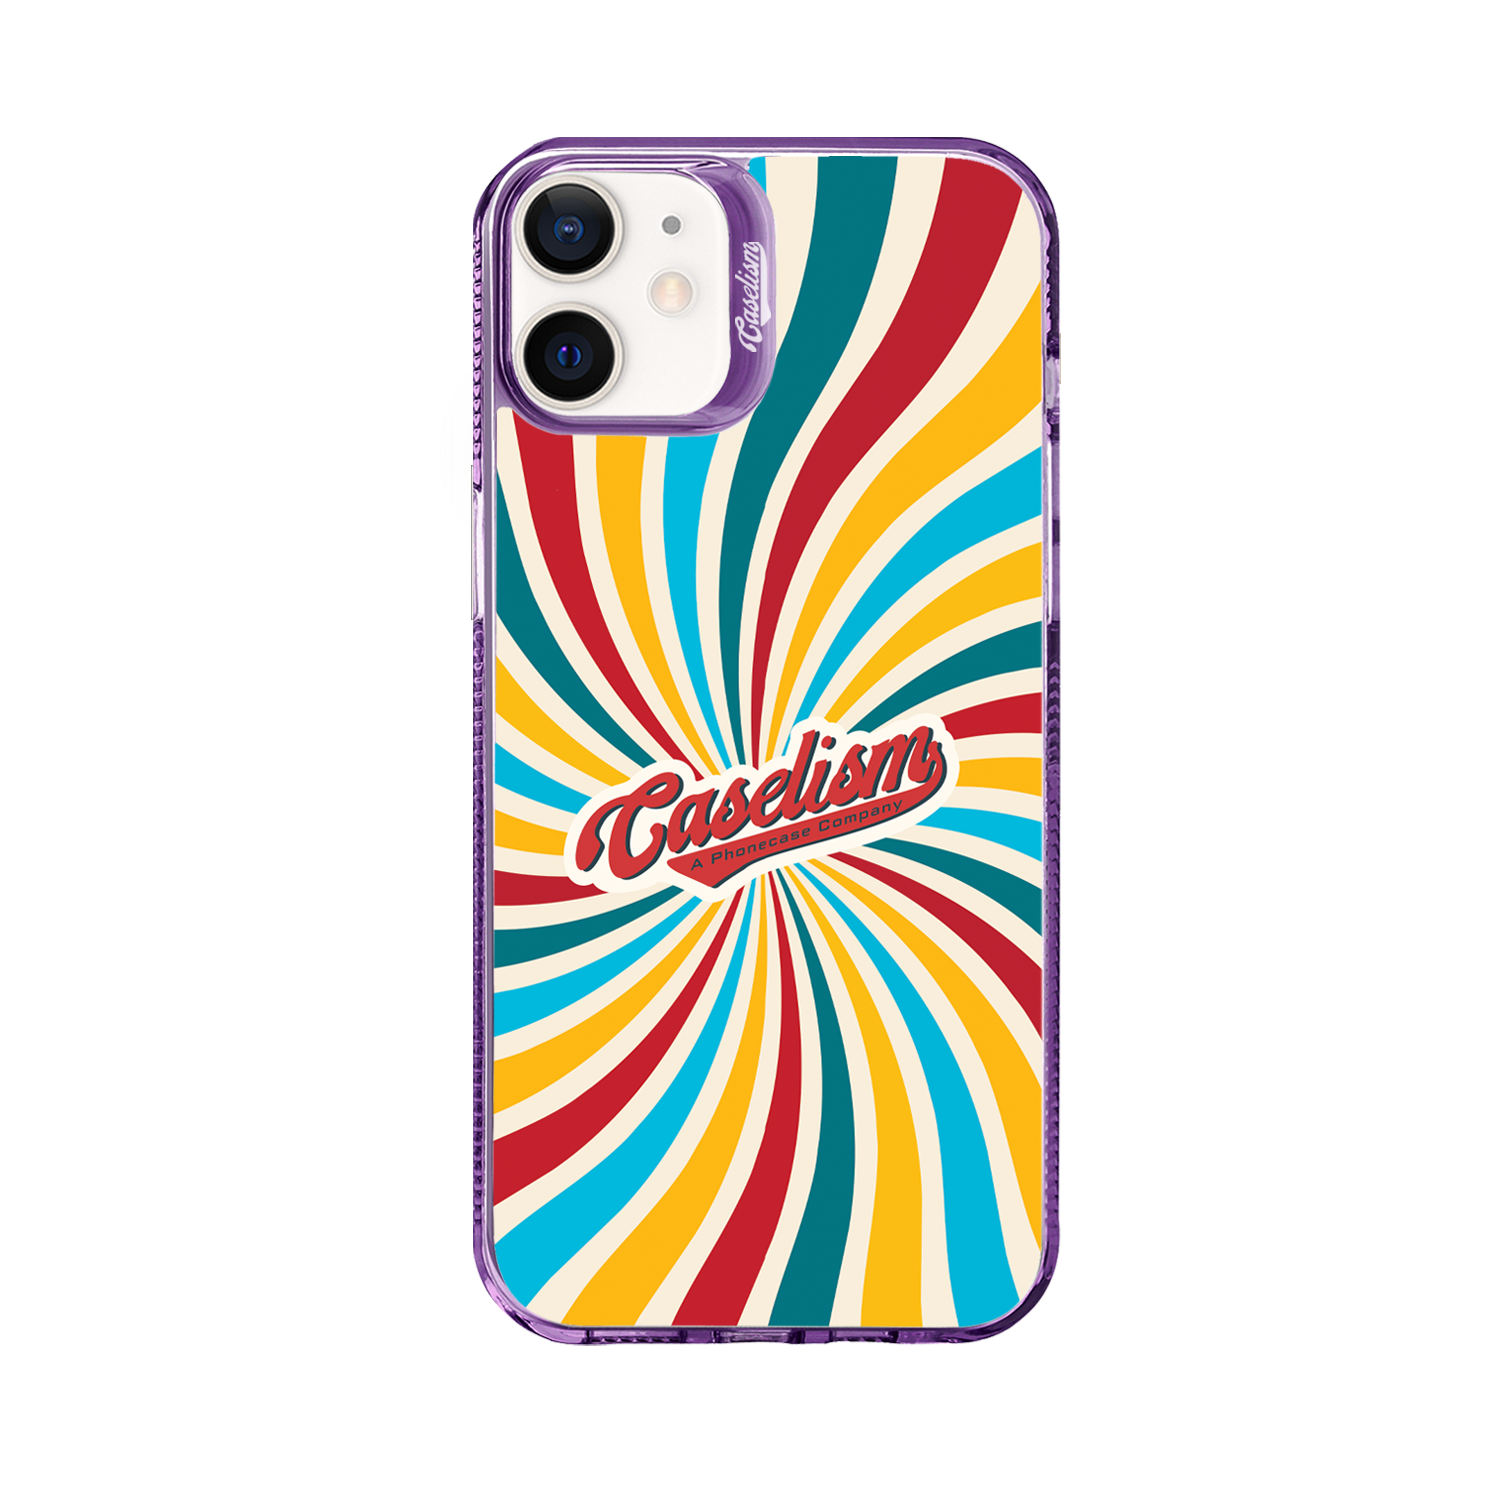 CASE001 - ColorLite Case for iPhone